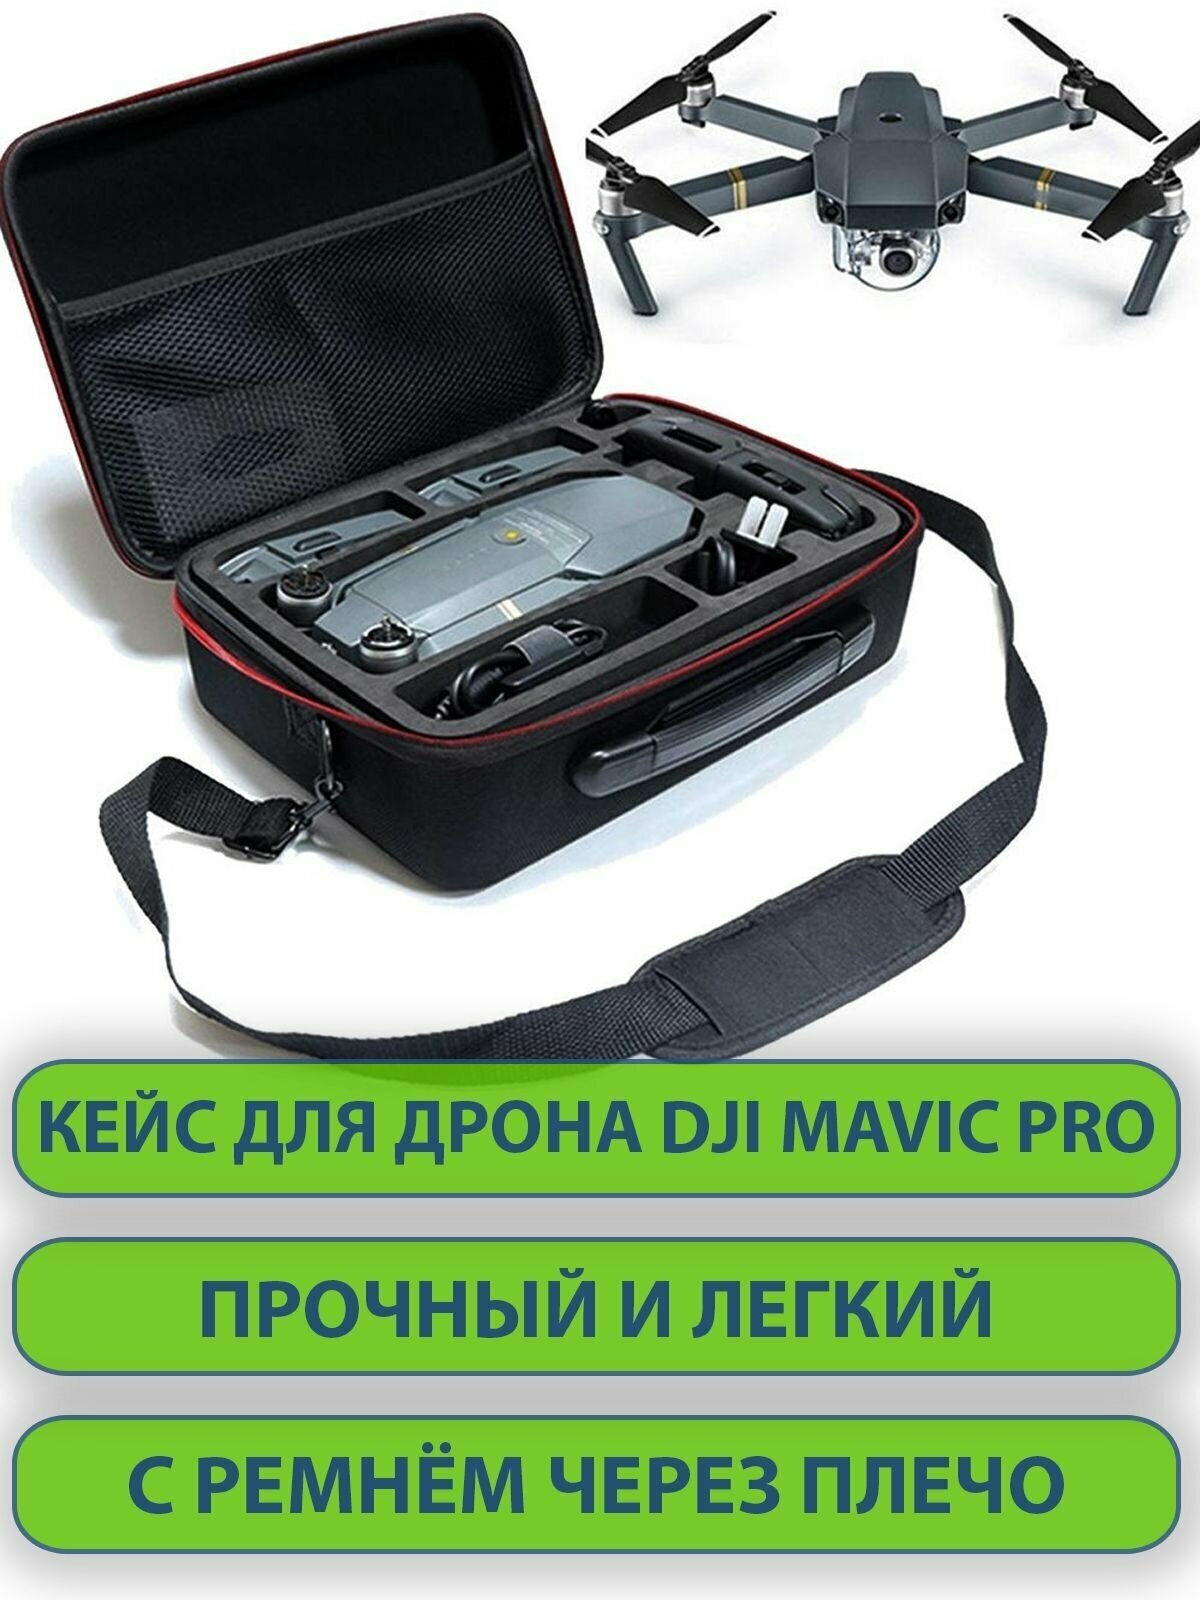 Сумка на плечо для дрона DJI MAVIC Pro кейс для хранения и переноски дрона контроллера зарядки для аккумуляторов и аксессуаров